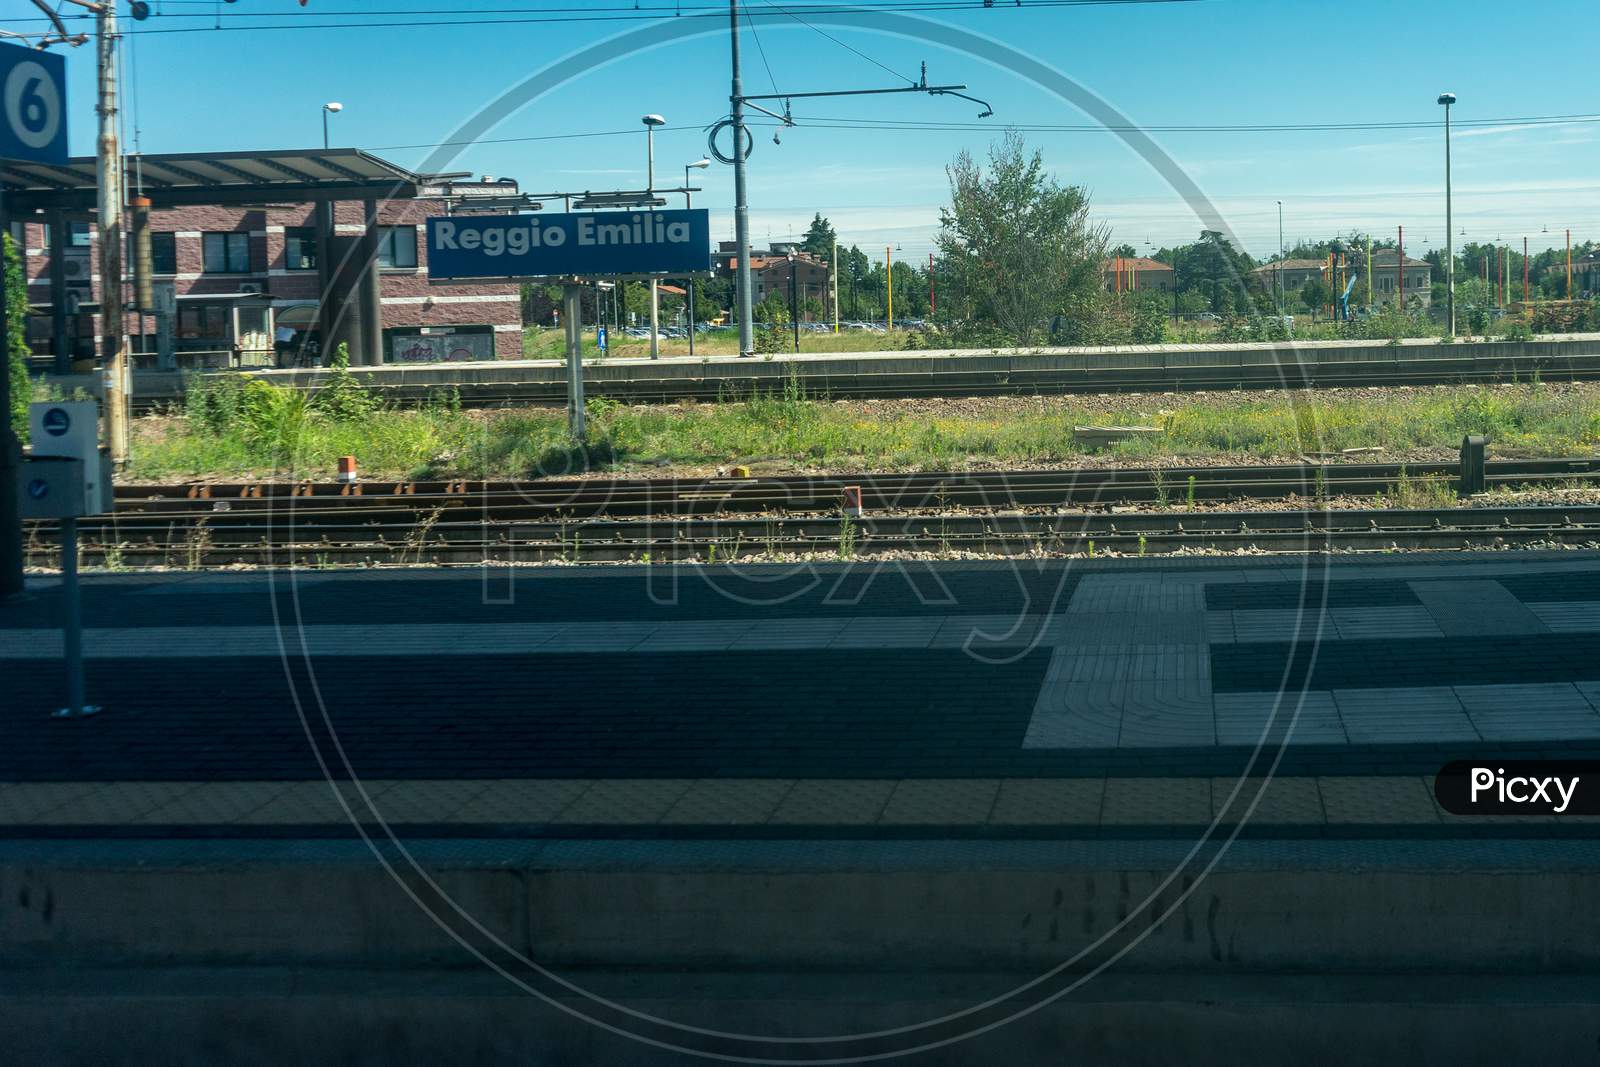 Reggio Emilia, Italy - 28 June 2018: The Reggio Emilia Railway Station, Italy